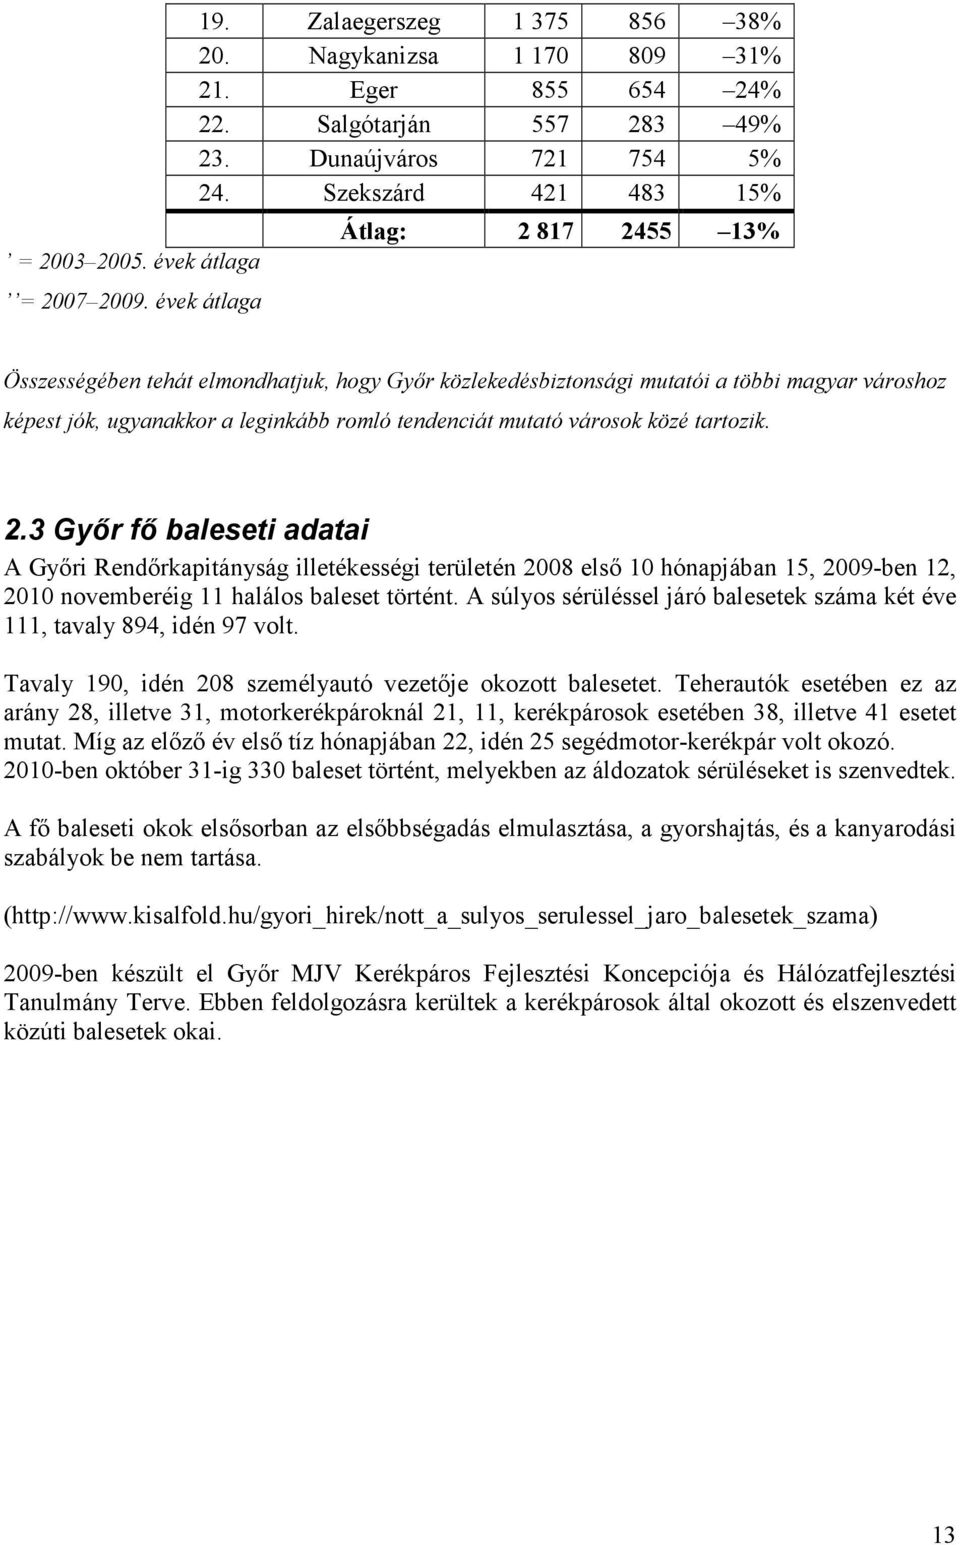 városok közé tartozik. 2.3 Gyır fı baleseti adatai A Gyıri Rendırkapitányság illetékességi területén 2008 elsı 10 hónapjában 15, 2009-ben 12, 2010 novemberéig 11 halálos baleset történt.